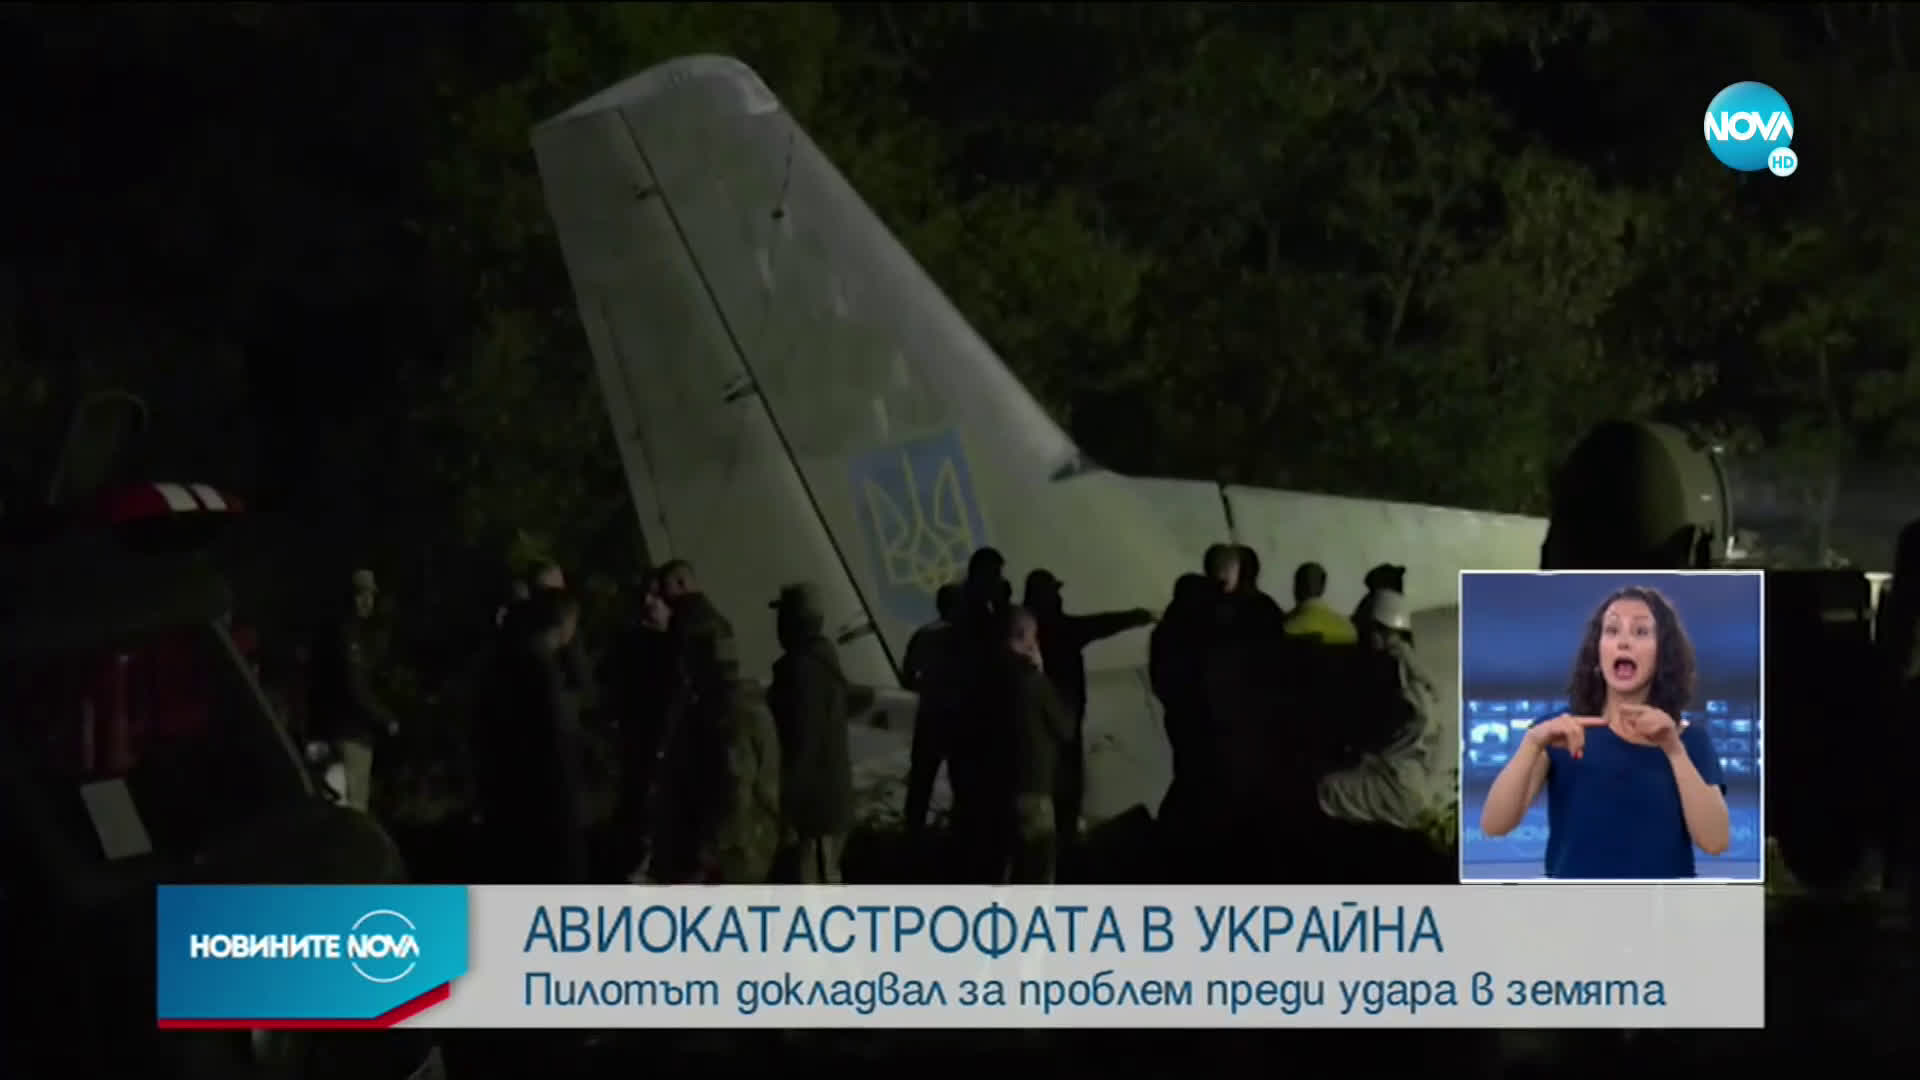 Авиокатастрофата в Украйна: Пилотът докладвал за проблем преди удара